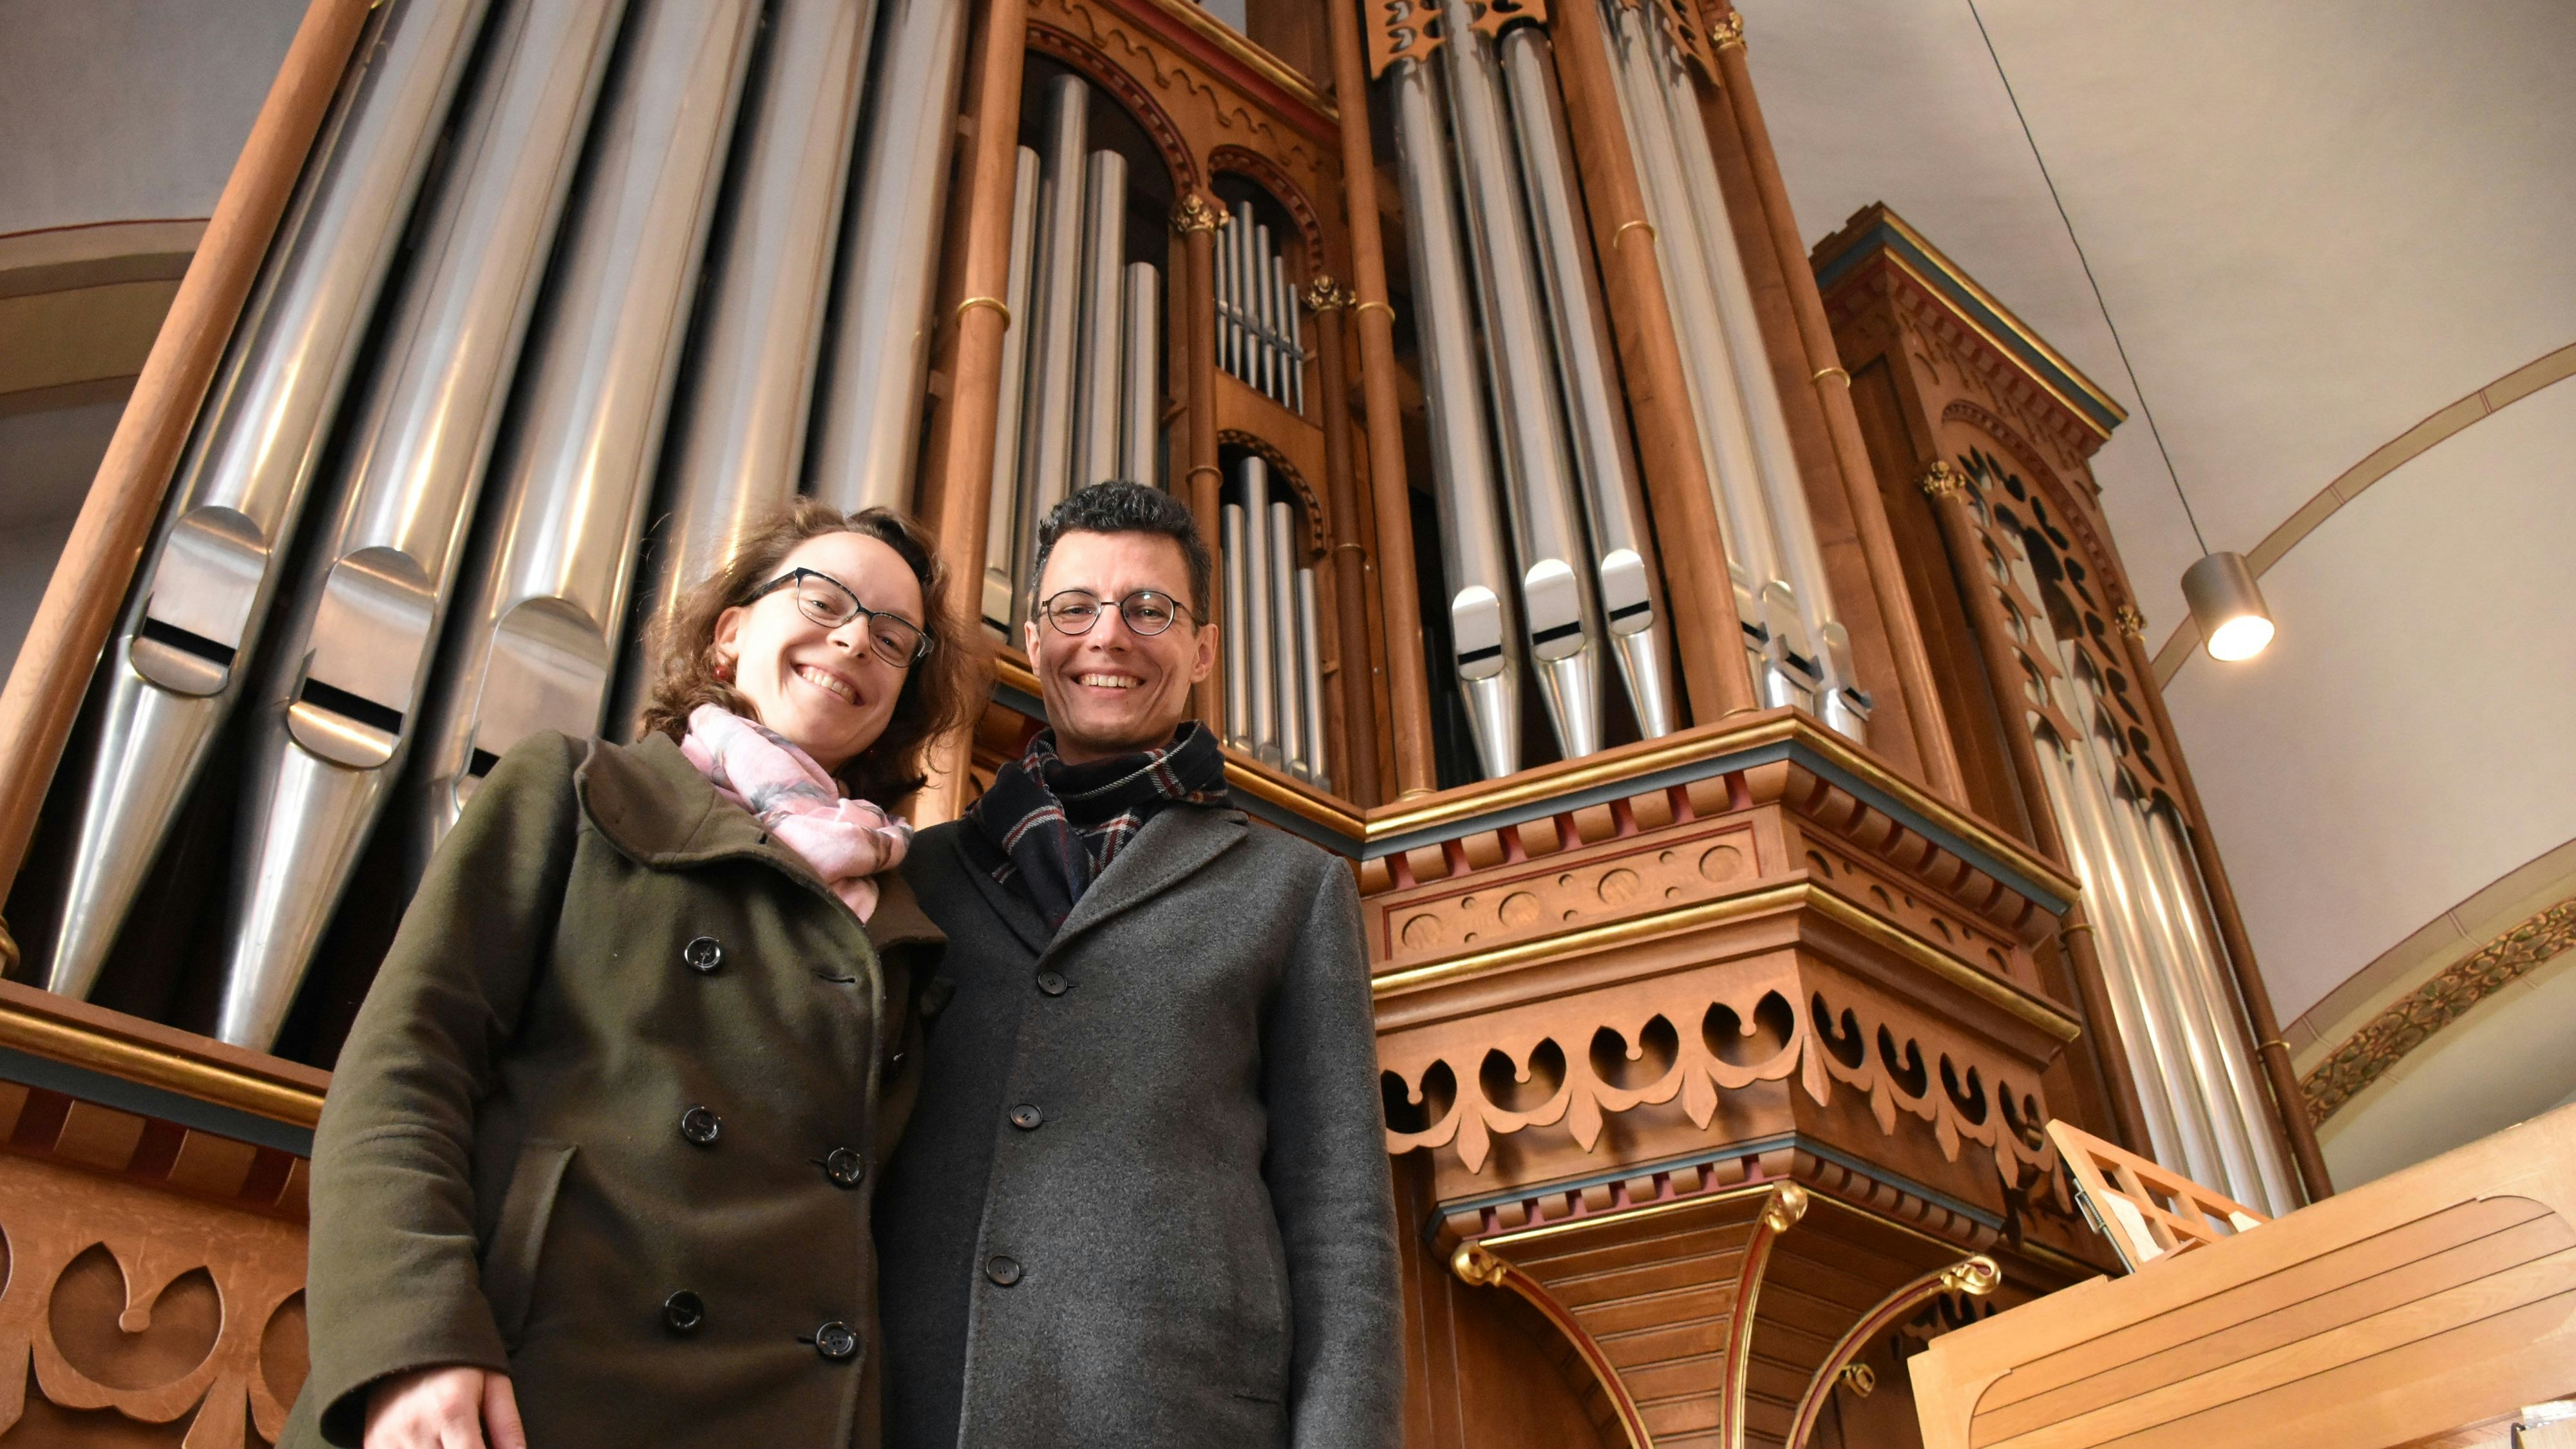 Sie harmonieren beruflich und privat: Die Kirchenmusiker Barbara Thalhammer und Christian Kienel stehen an der Lobback-Orgel in der Kirche St. Gertrud in Lohne. Foto: Timphaus